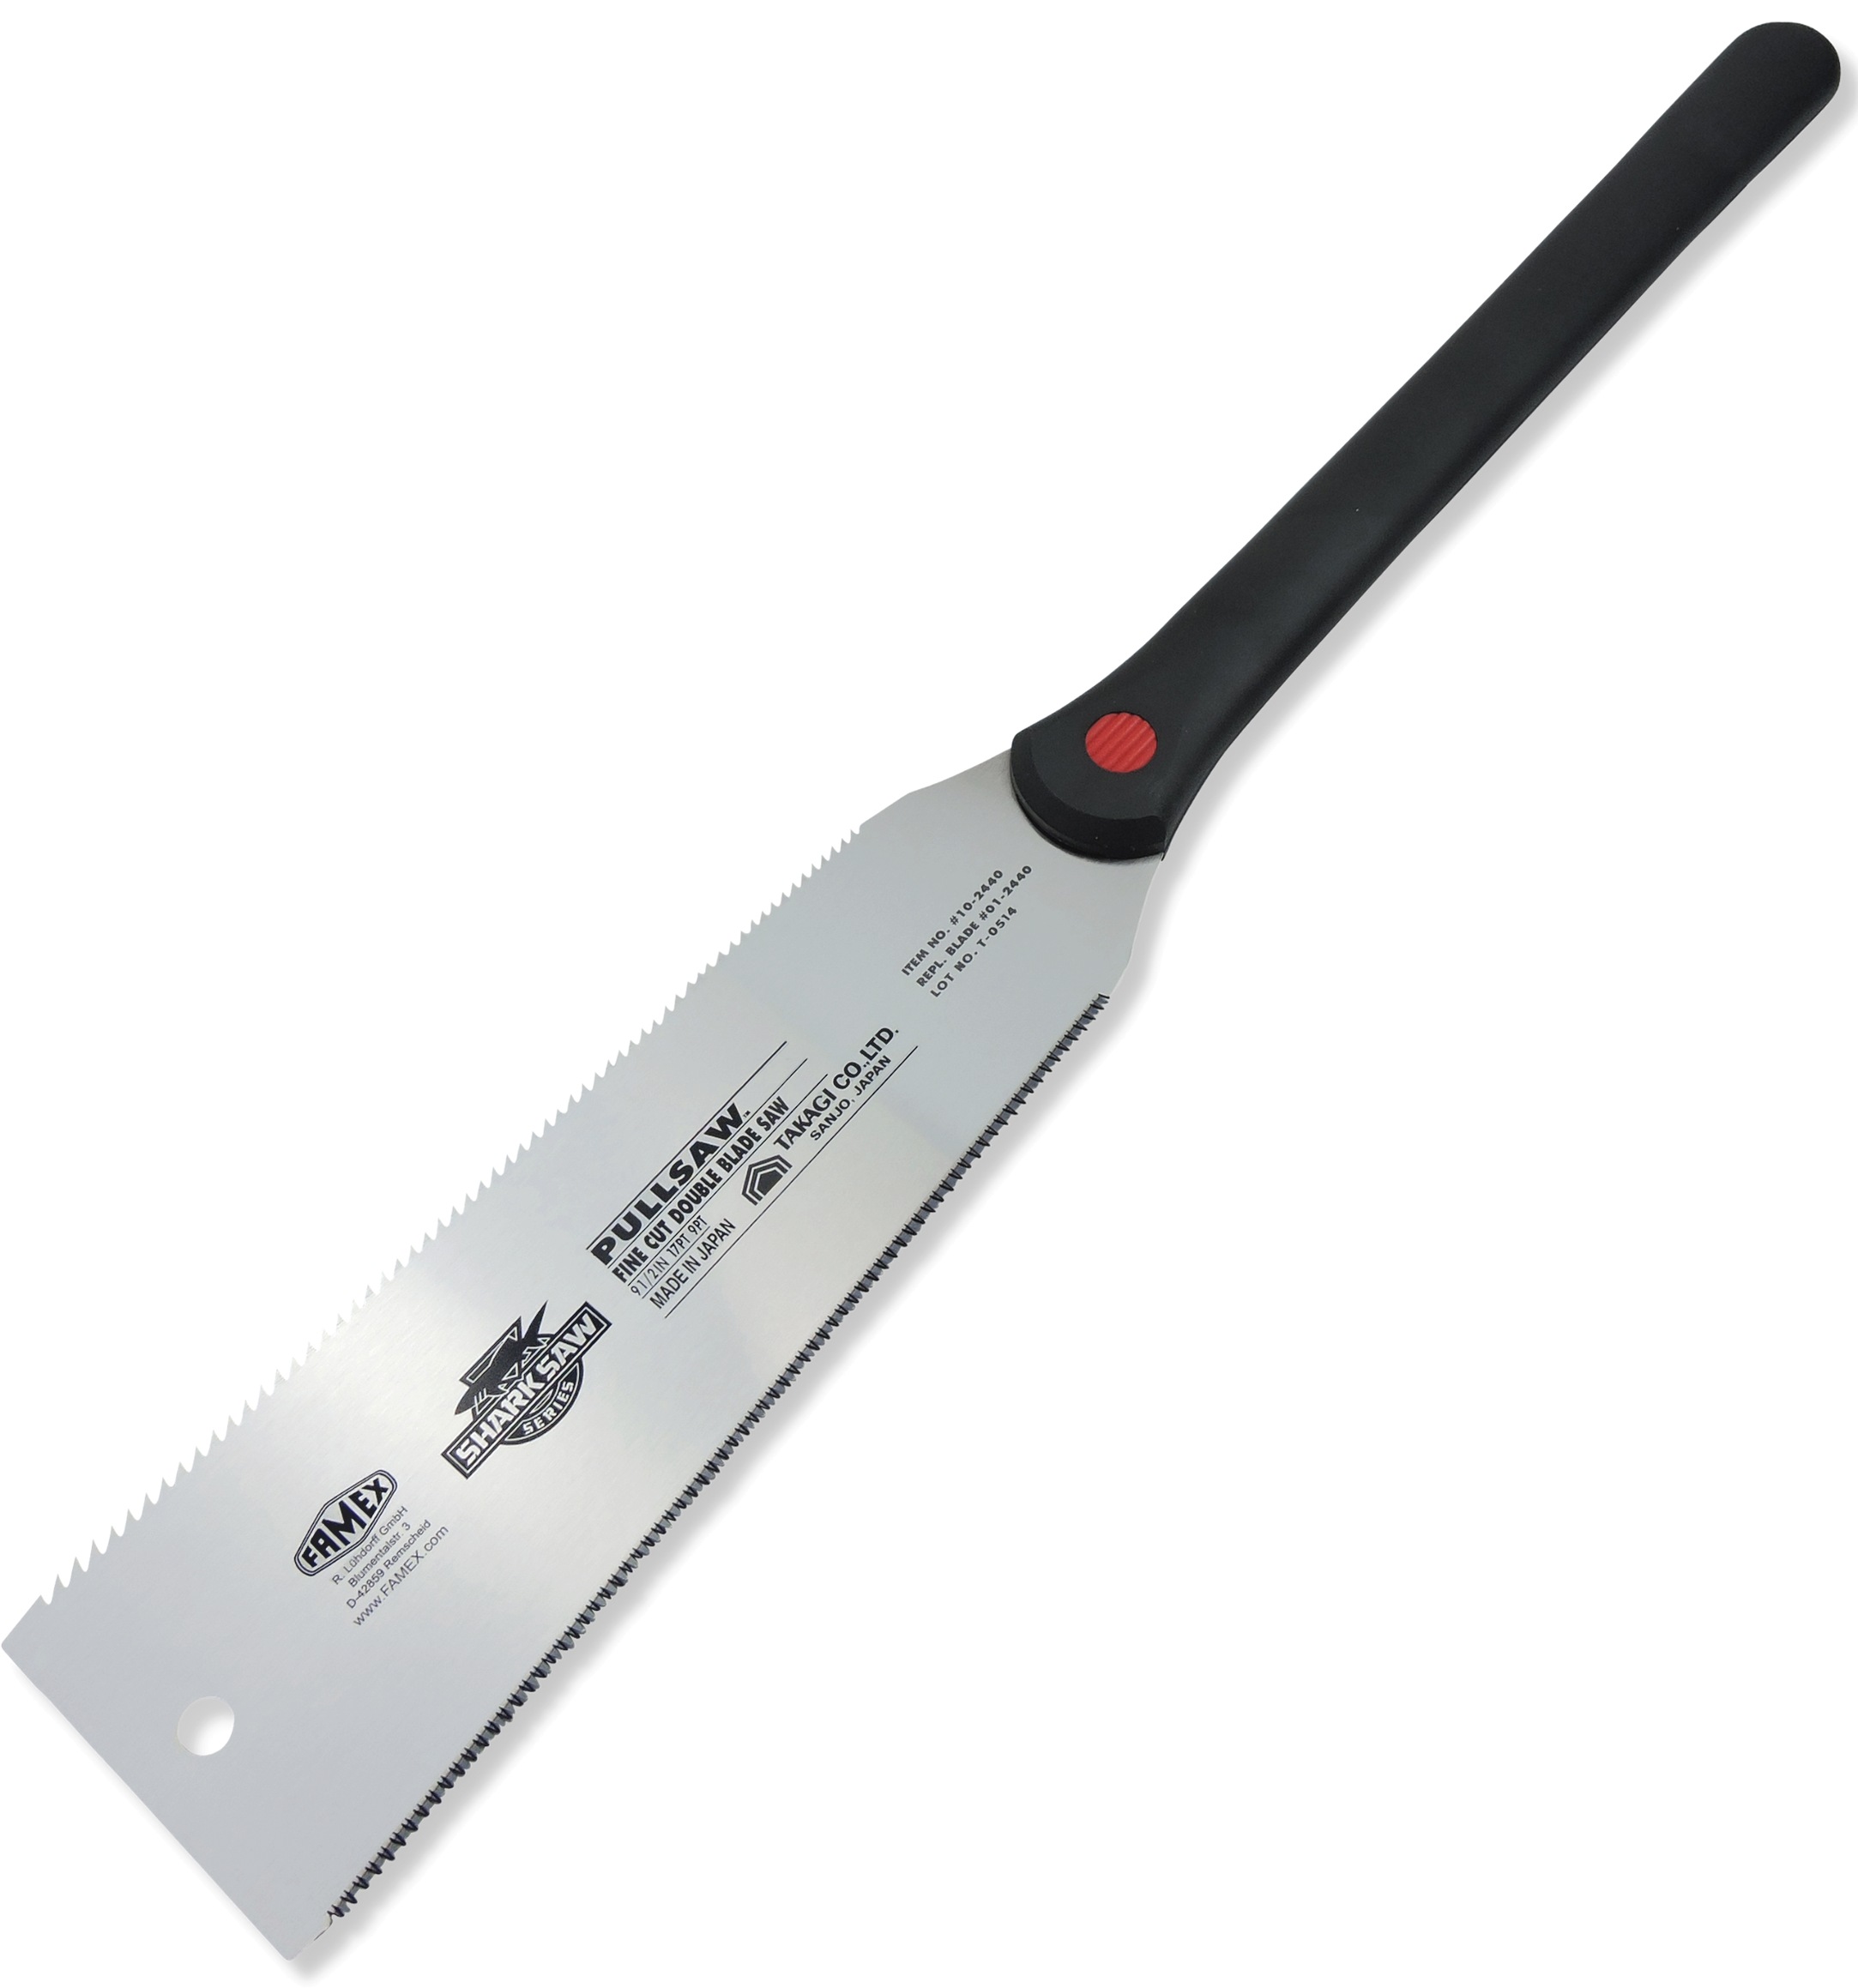 FAMEX Japansäge "5510 - PROFESSIONAL", 23 cm Schnittlänge